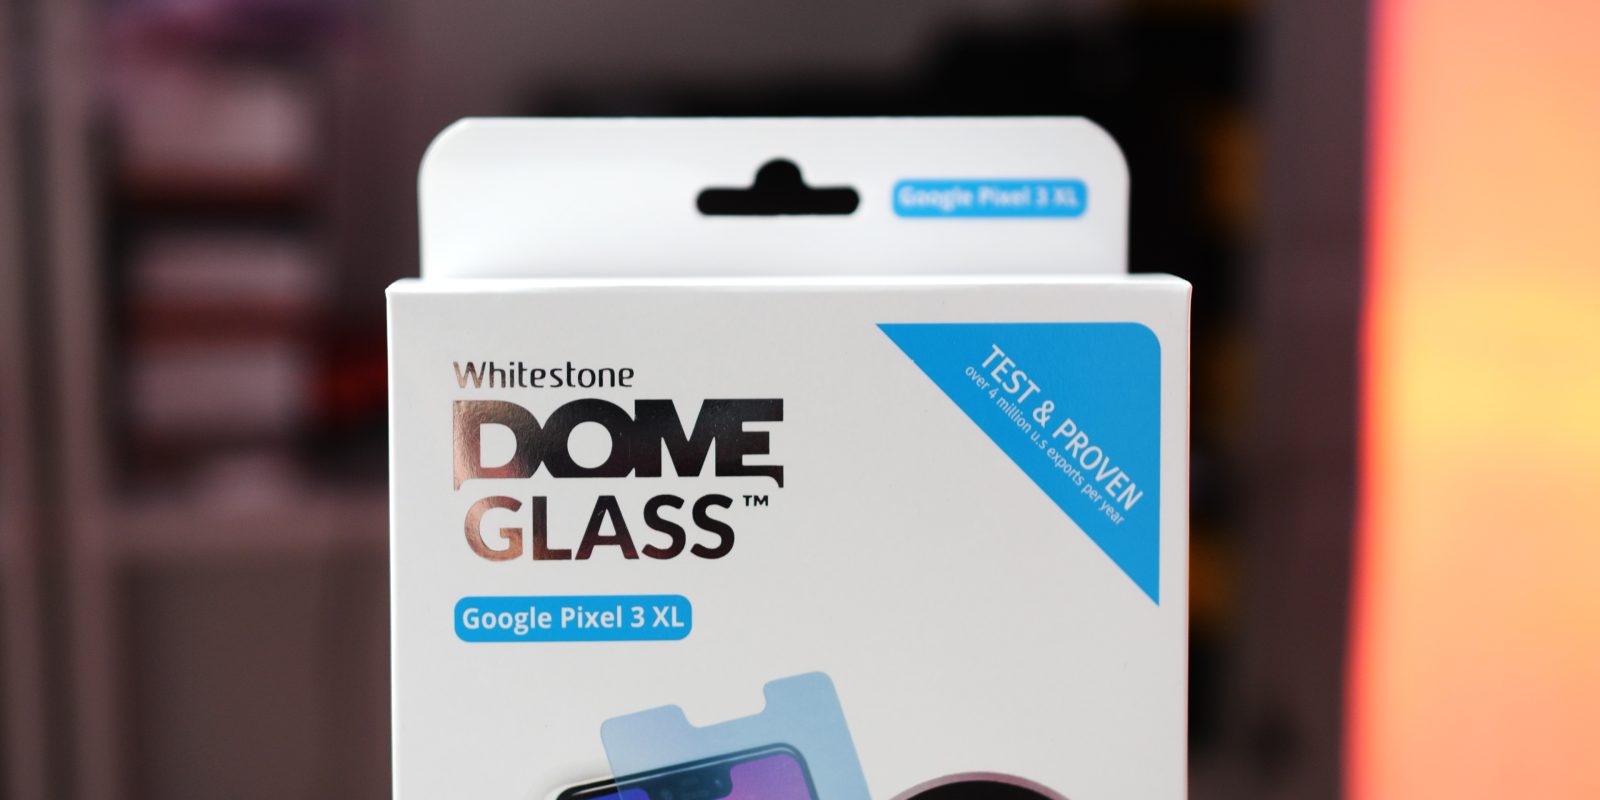 Whitestone Dome Glass include un rivestimento oleorepellente che molte opzioni più economiche semplicemente non includono. Ciò significa una superficie di vetro meravigliosamente liscia al tatto